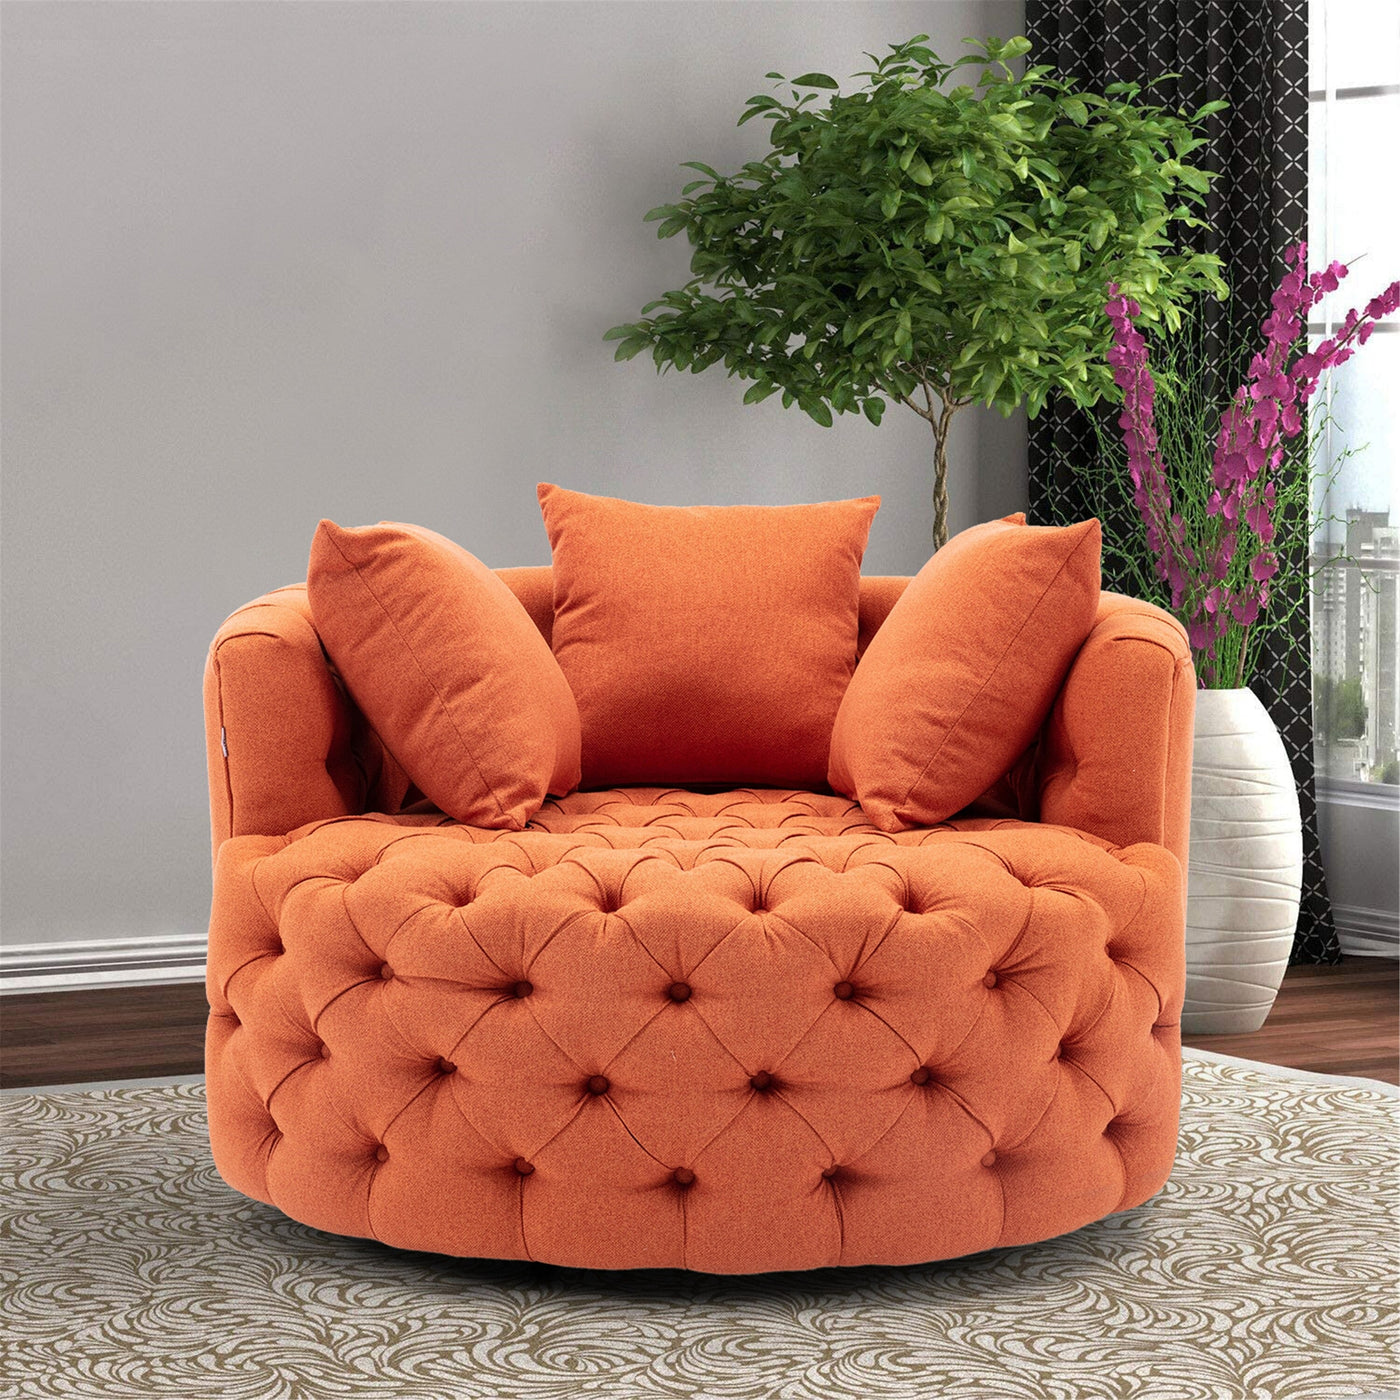 Homio Decor Living Room Linen / Orange Luxury Button Tufted Round Leisure Chair